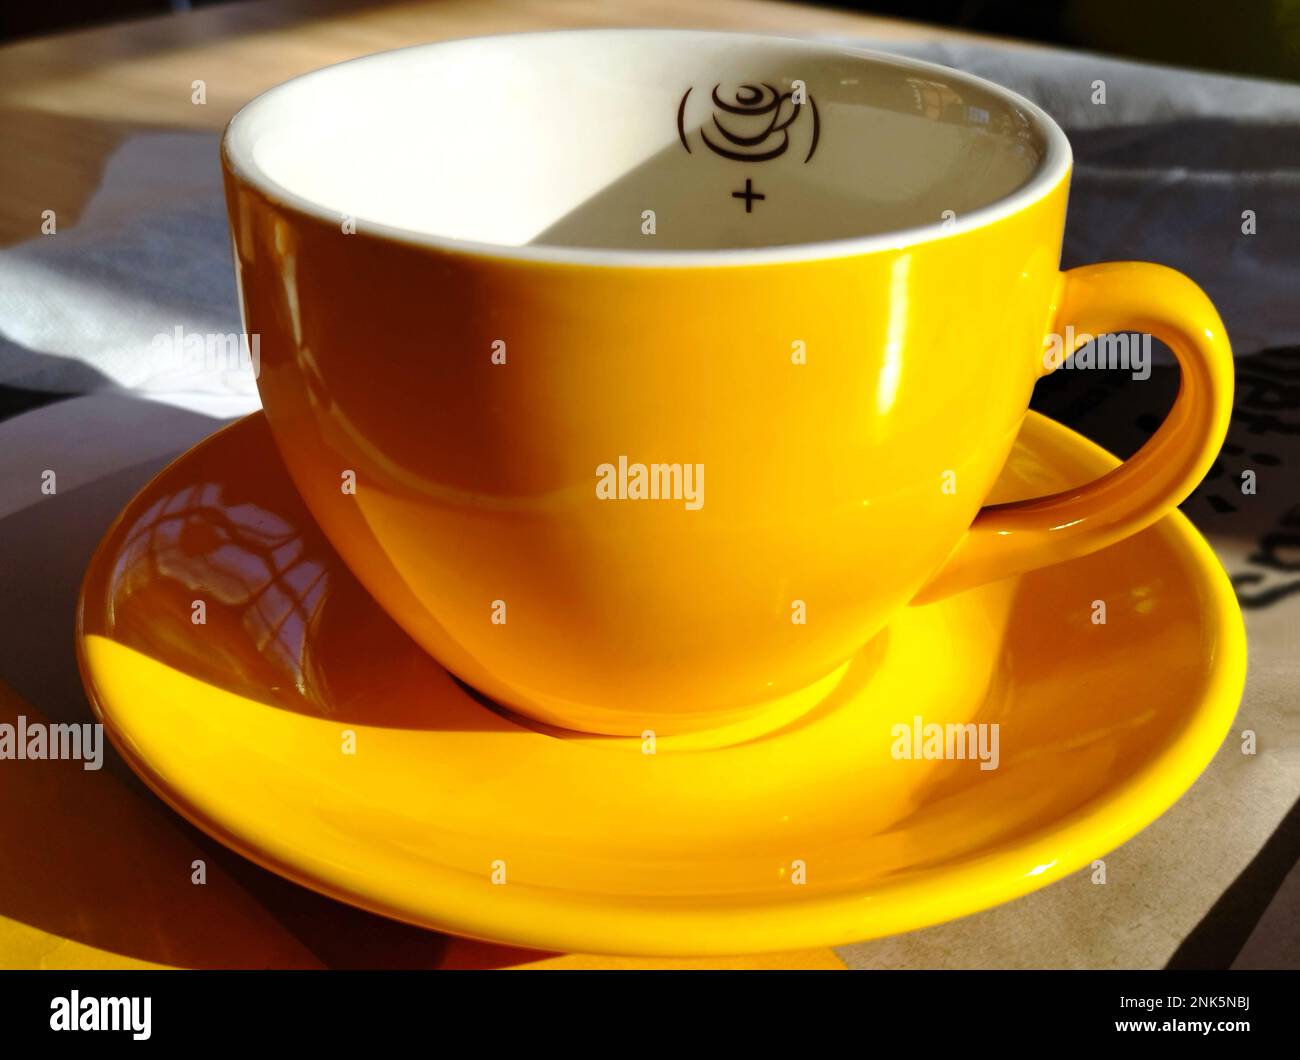 tazza di cappuccino o tazza in porcellana gialla vuota in vista primo piano. superficie liscia riflettente lucida. ombre forti. concetto di consumo del caffè. Foto Stock